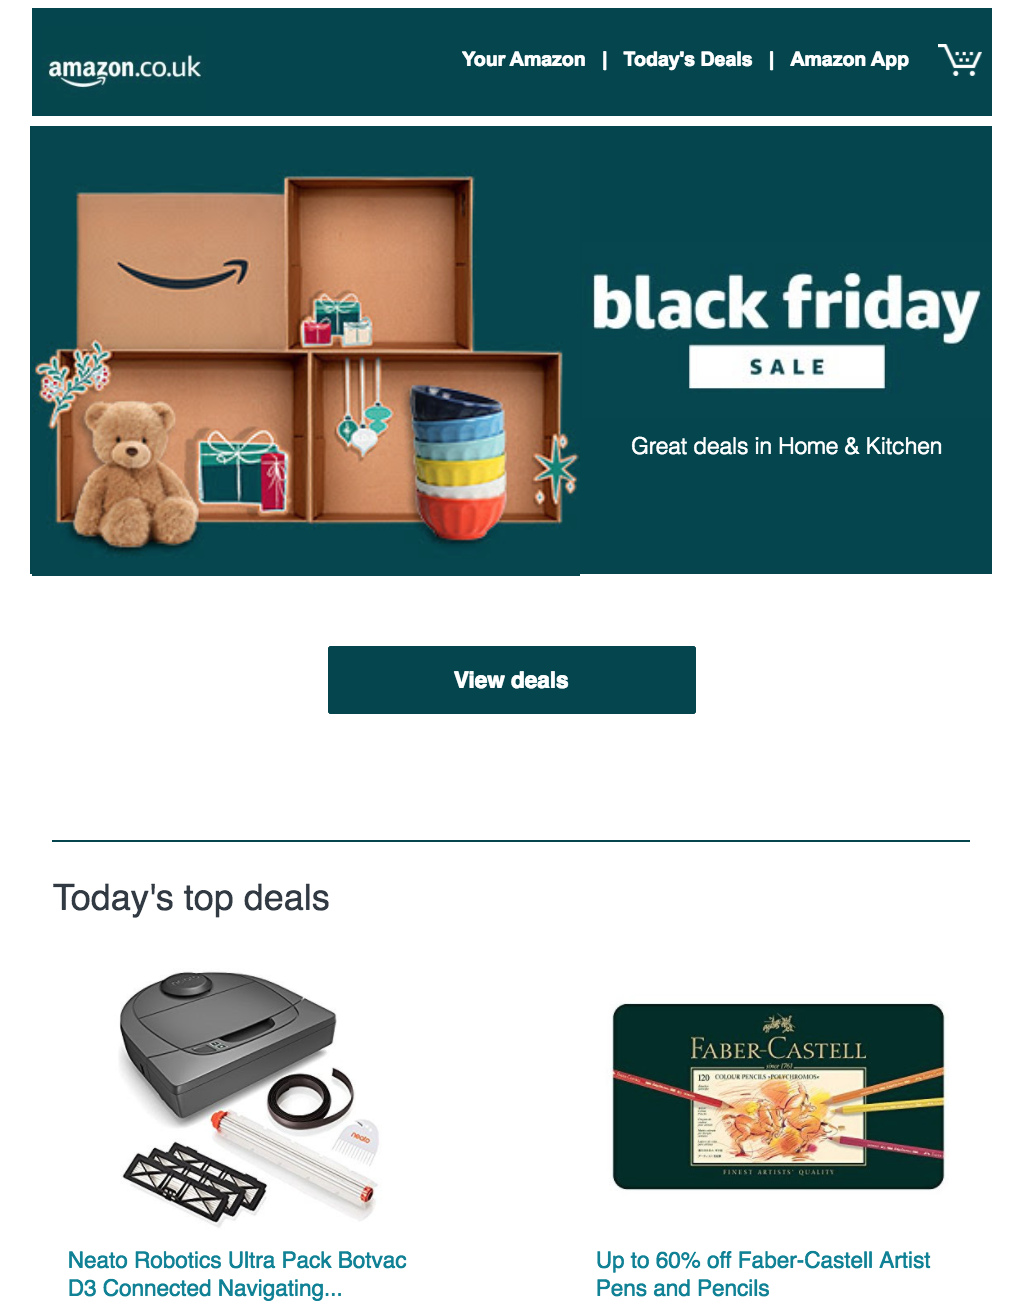 Ejemplo campaña Amazon Black Friday